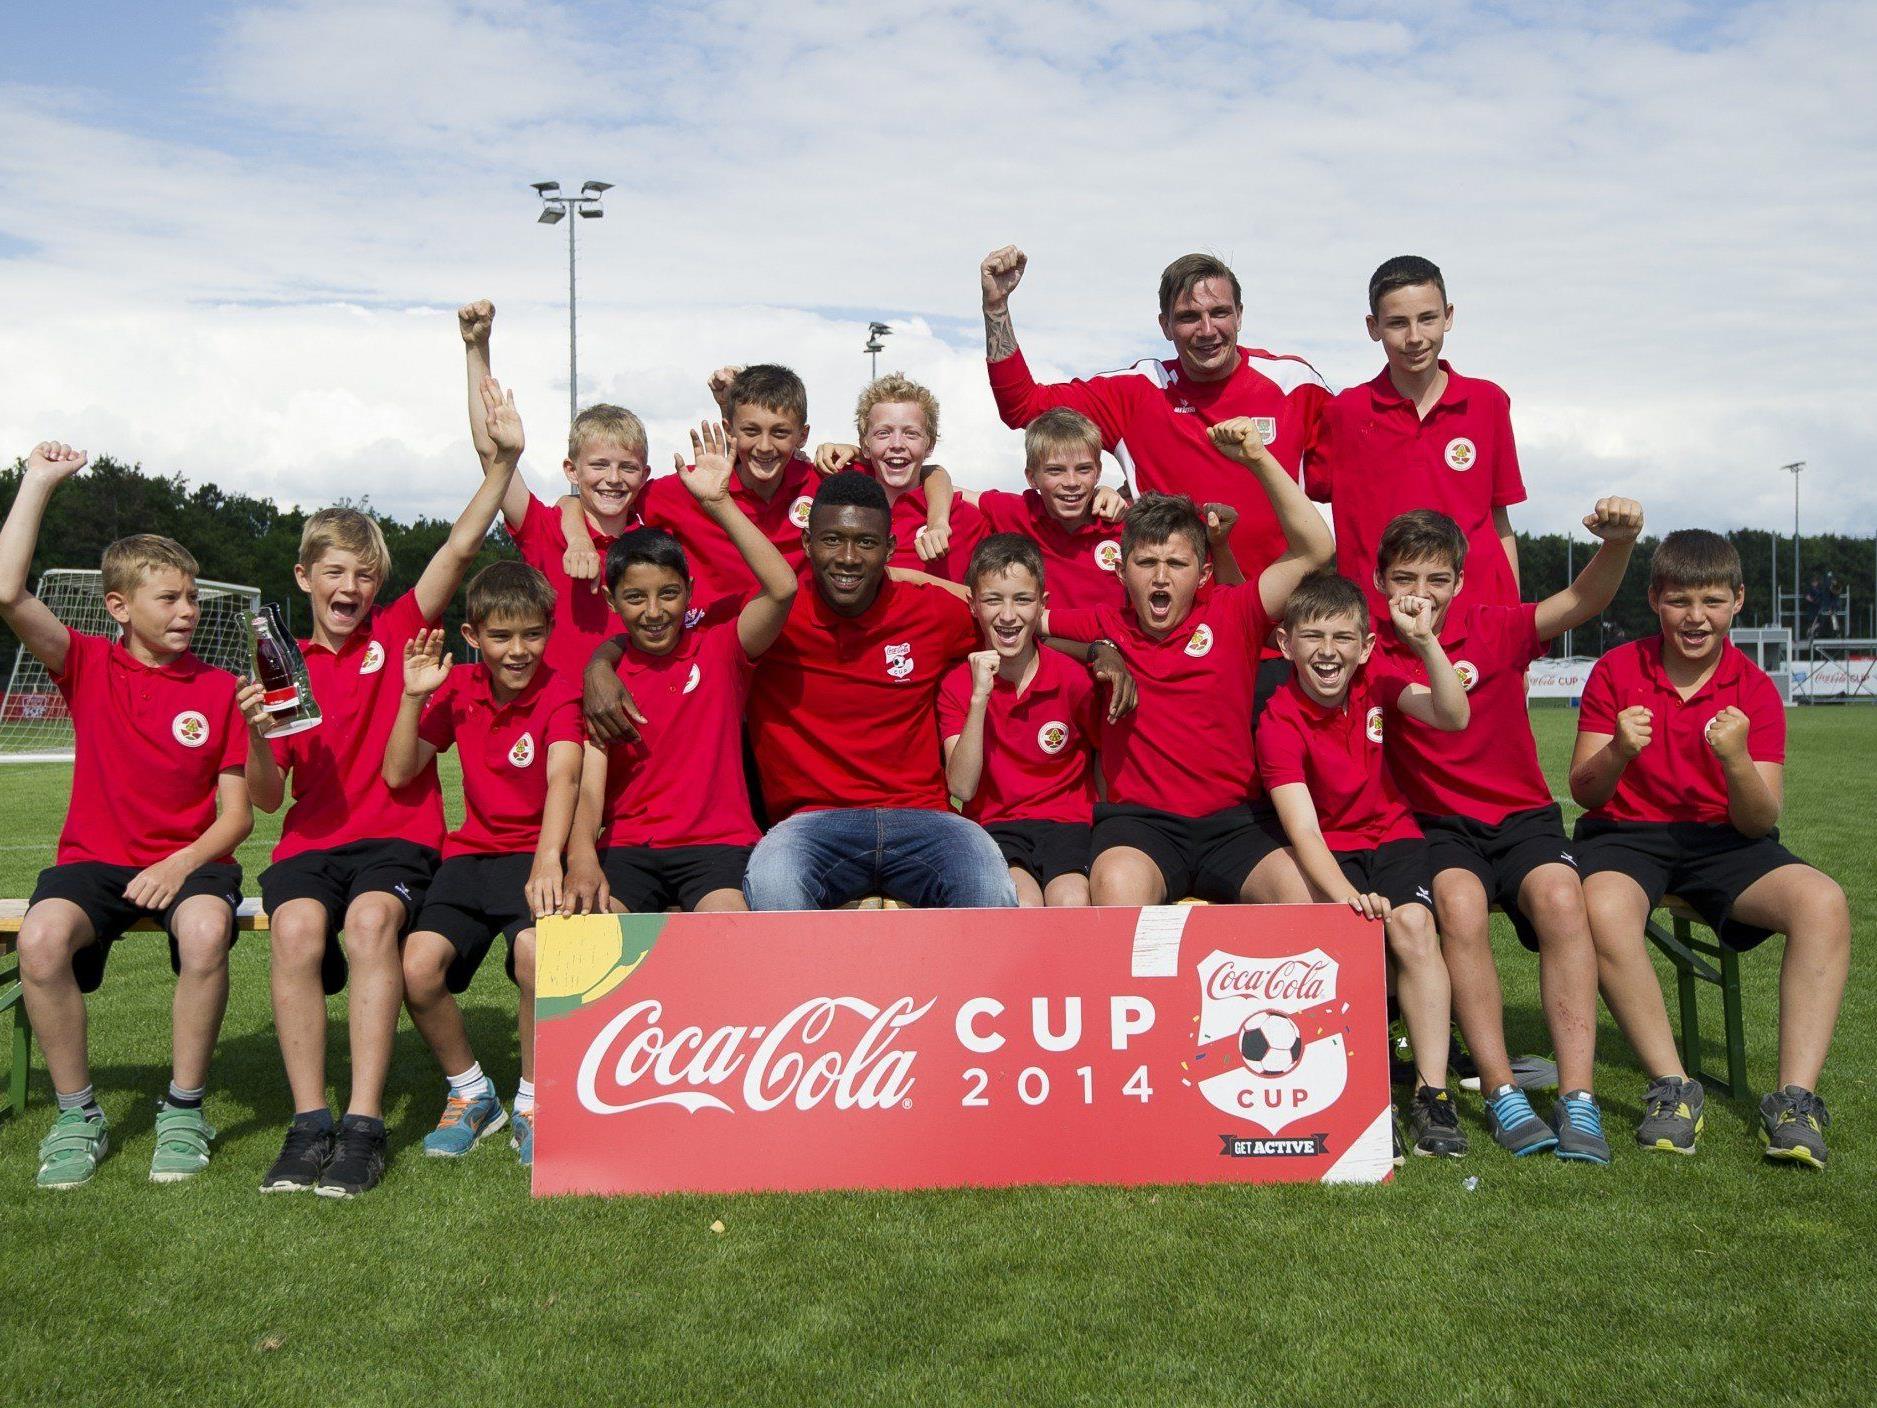 Absoluter Höhepunkt - die U12 Rothosen trafen beim Coca Cola Cup 2014 Superstar David Alaba.